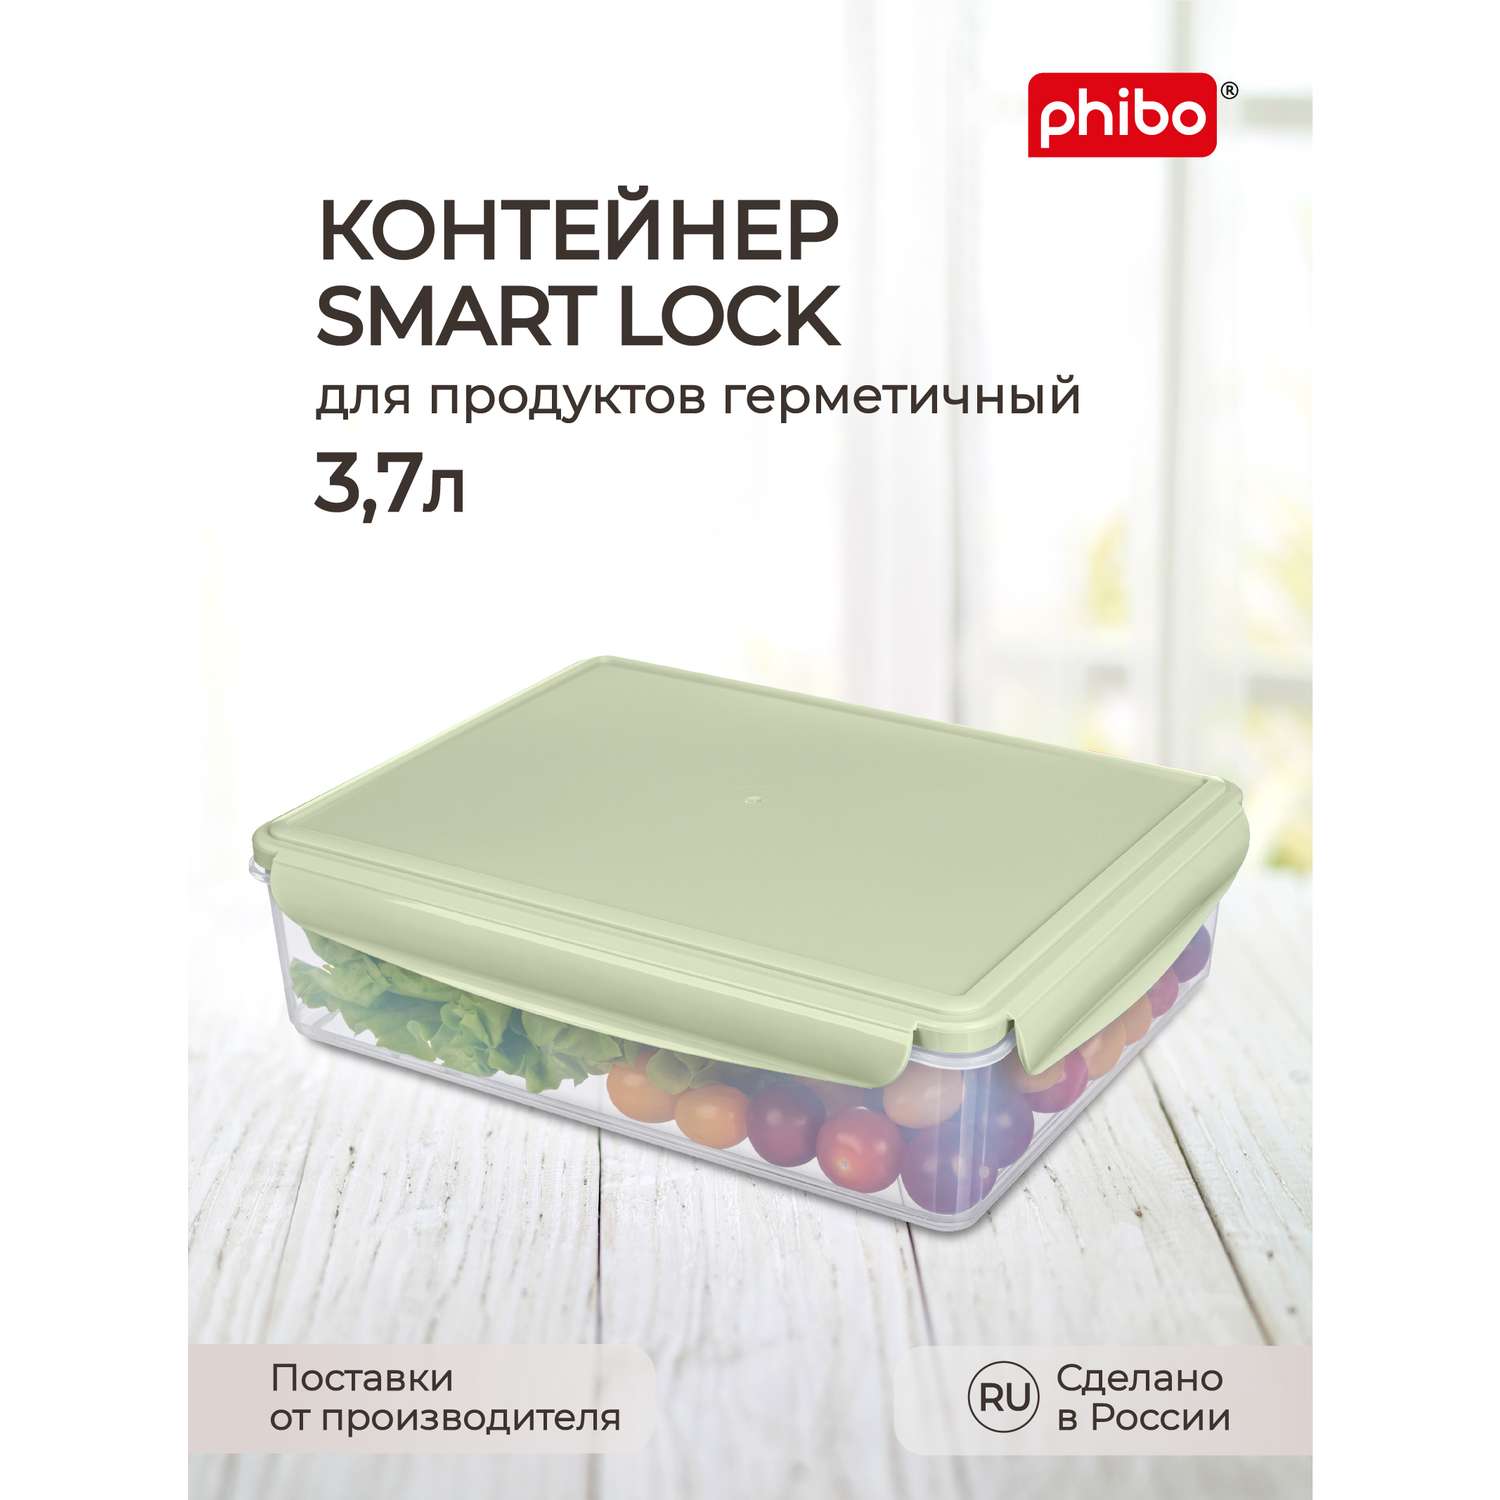 Контейнер Phibo для продуктов герметичный Smart Lock прямоугольный 3.7л зеленый - фото 1